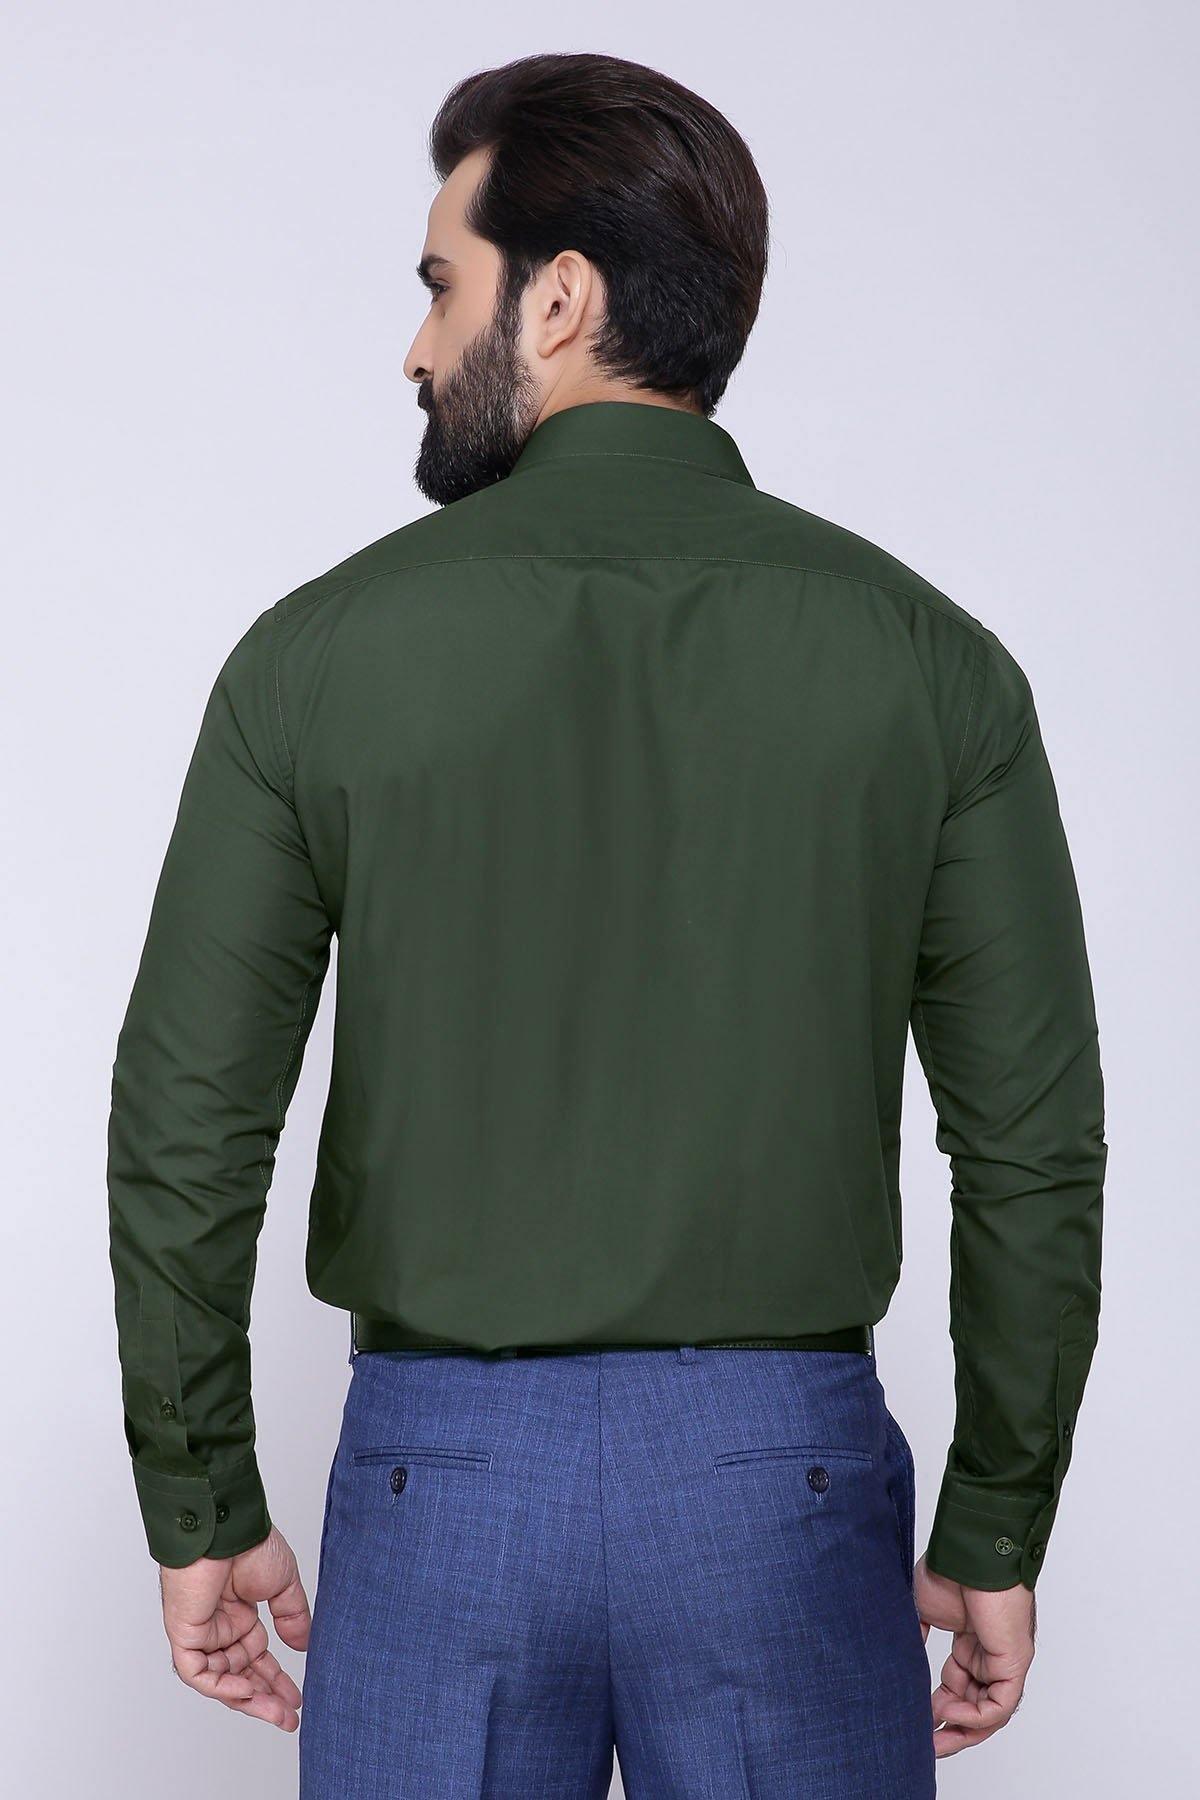 DRESS SHIRT FULL COLLAR GREEN at Charcoal Clothing